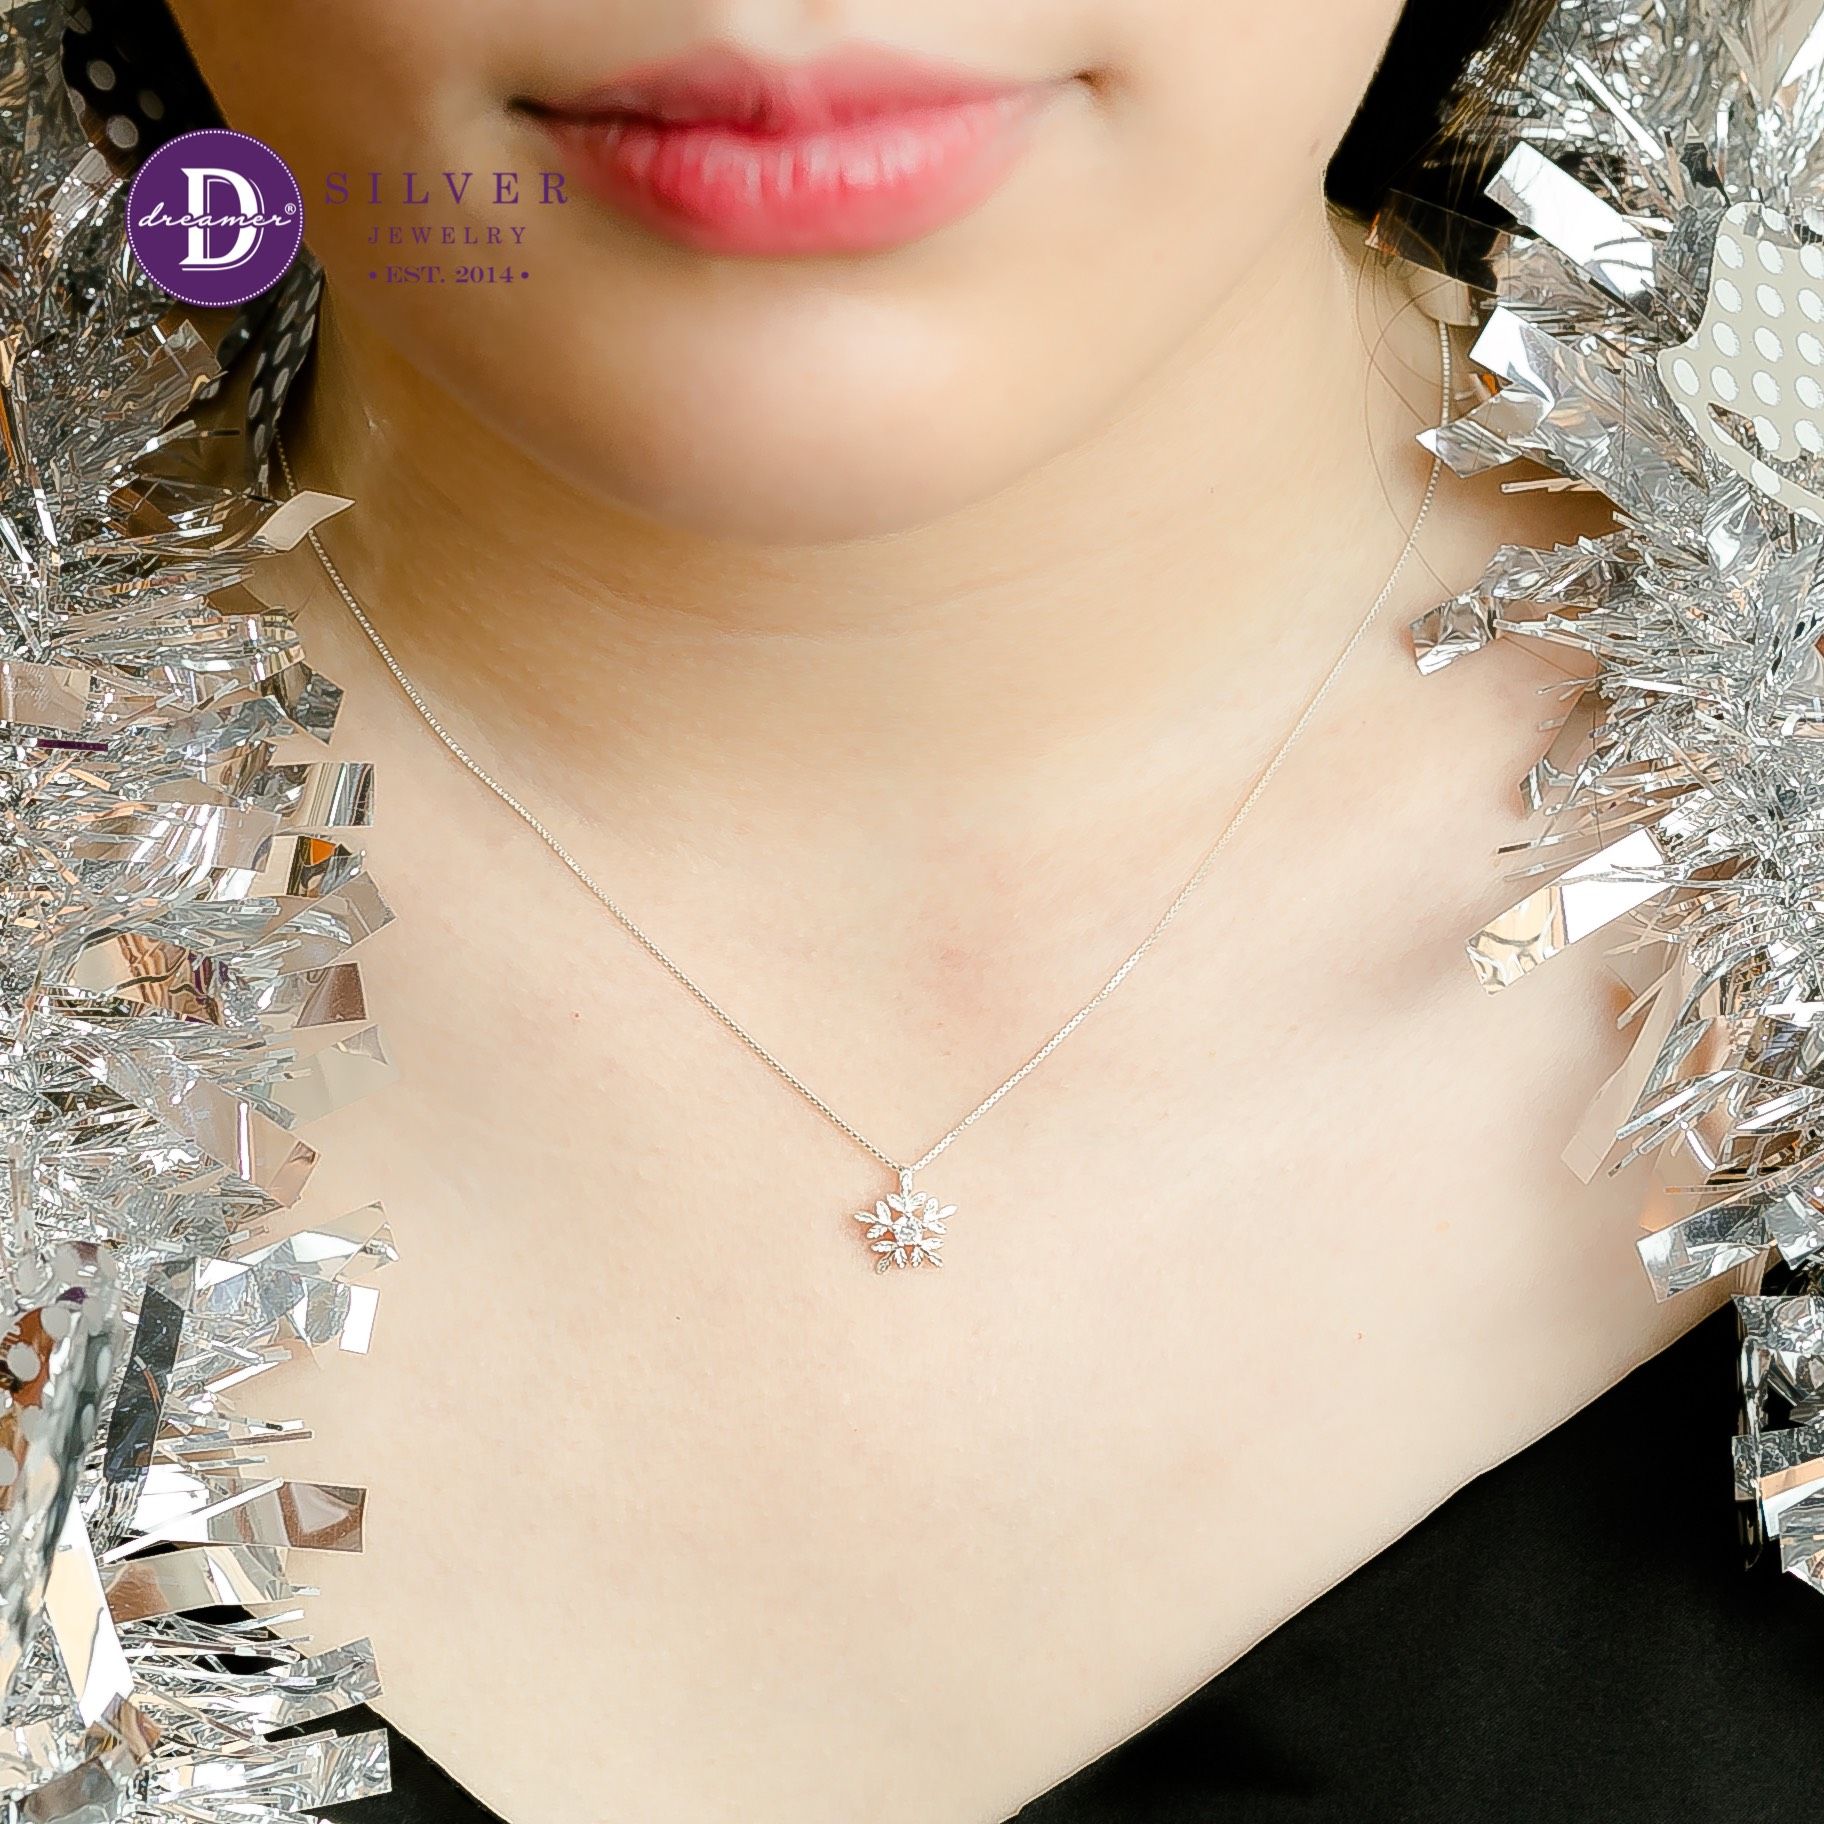  Snowflake Christmas Silver Necklace - Dây Chuyền Bạc 925 Hình Hoa Tuyết - Quà Tặng Giáng Sinh 339DCH 